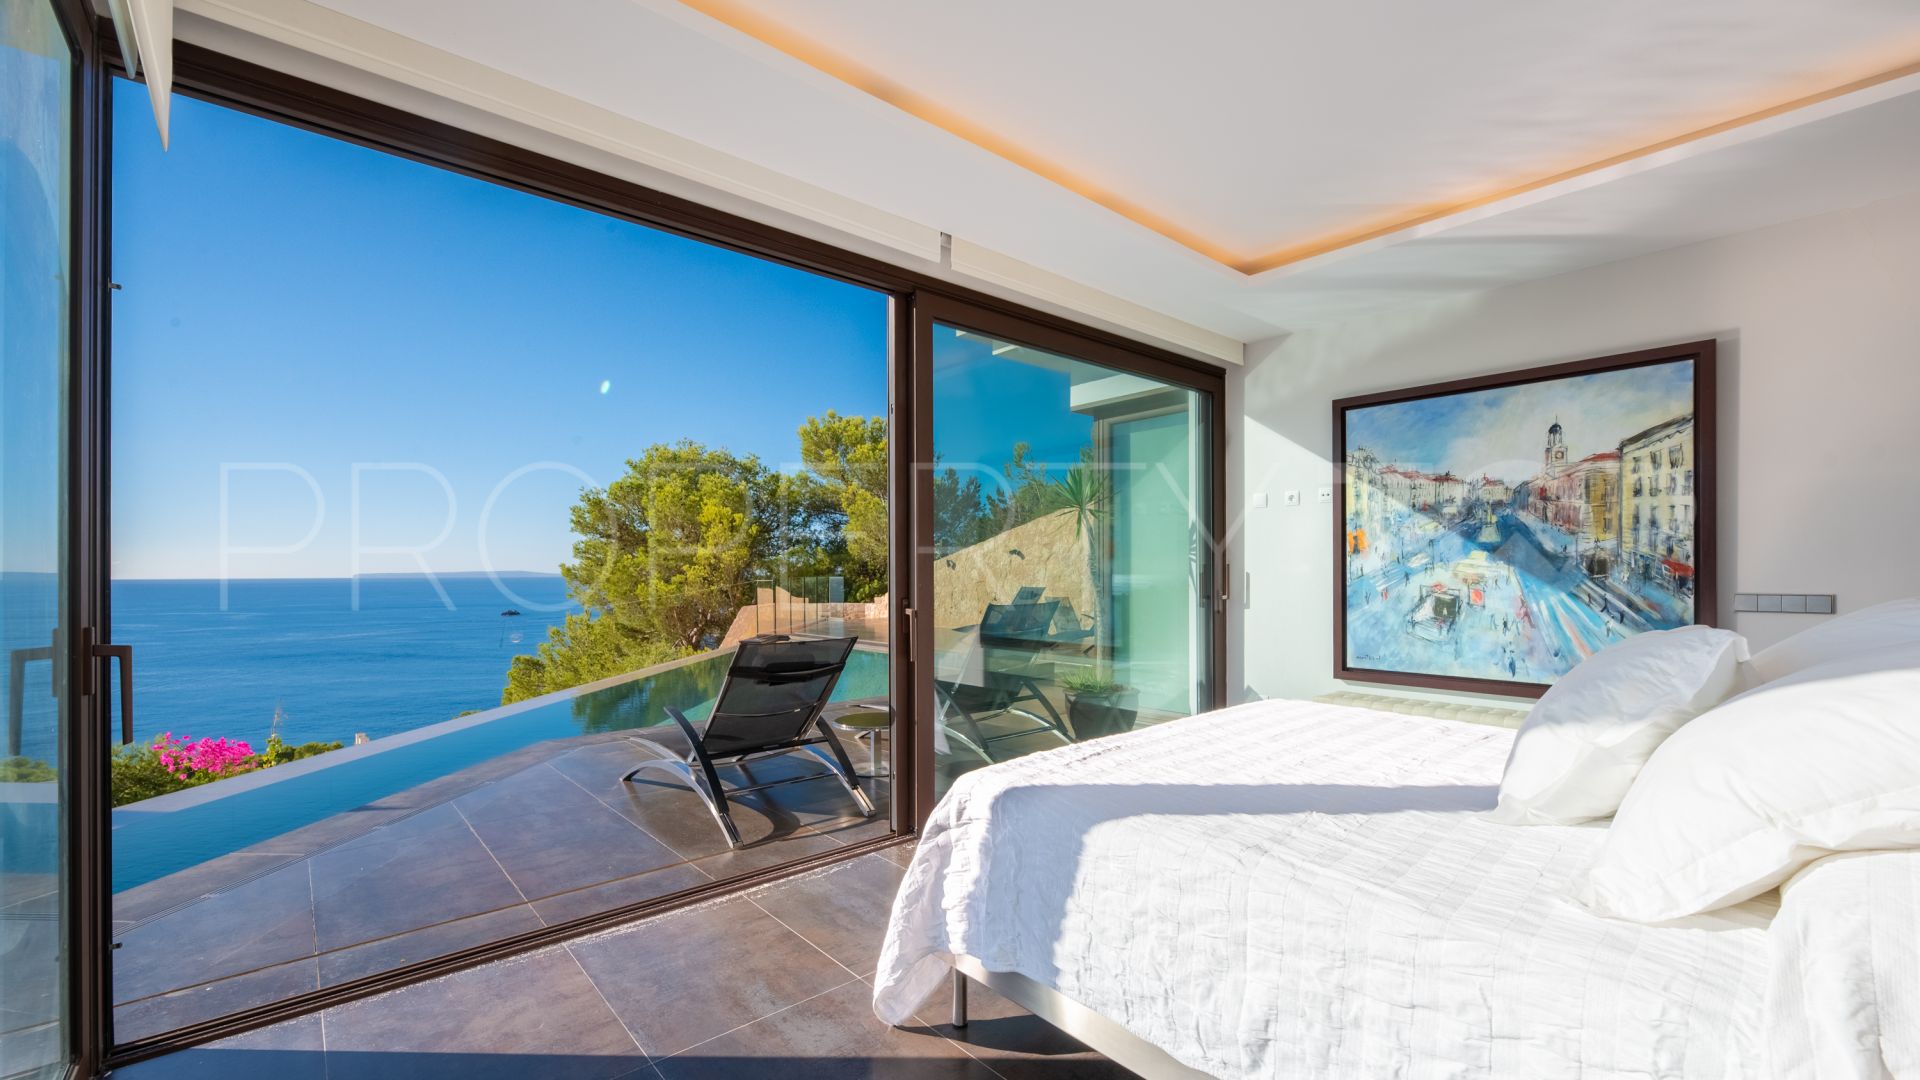 5 bedrooms Roca Llisa villa for sale